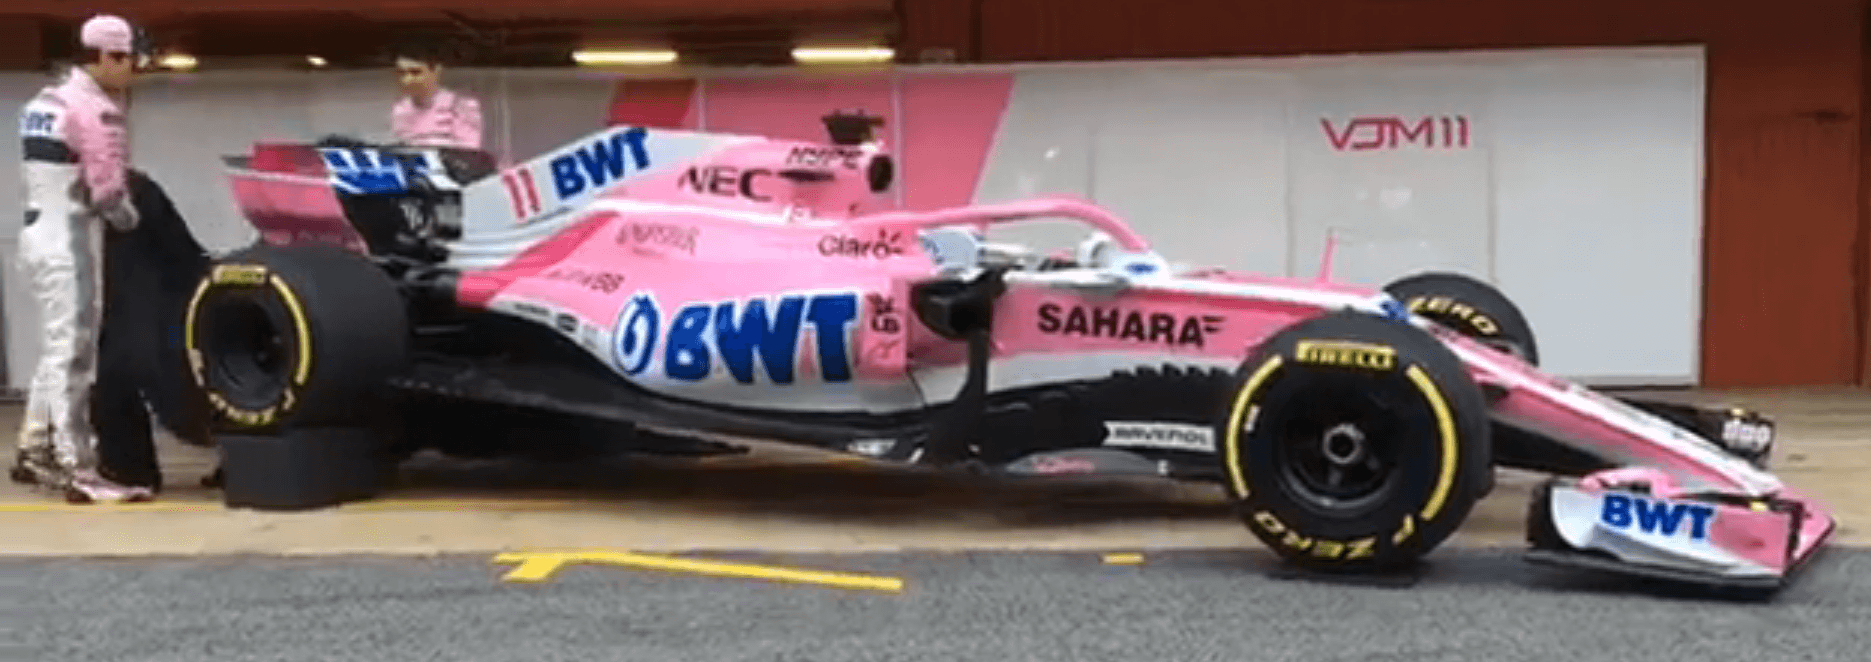 Force India VJM11 Revealed